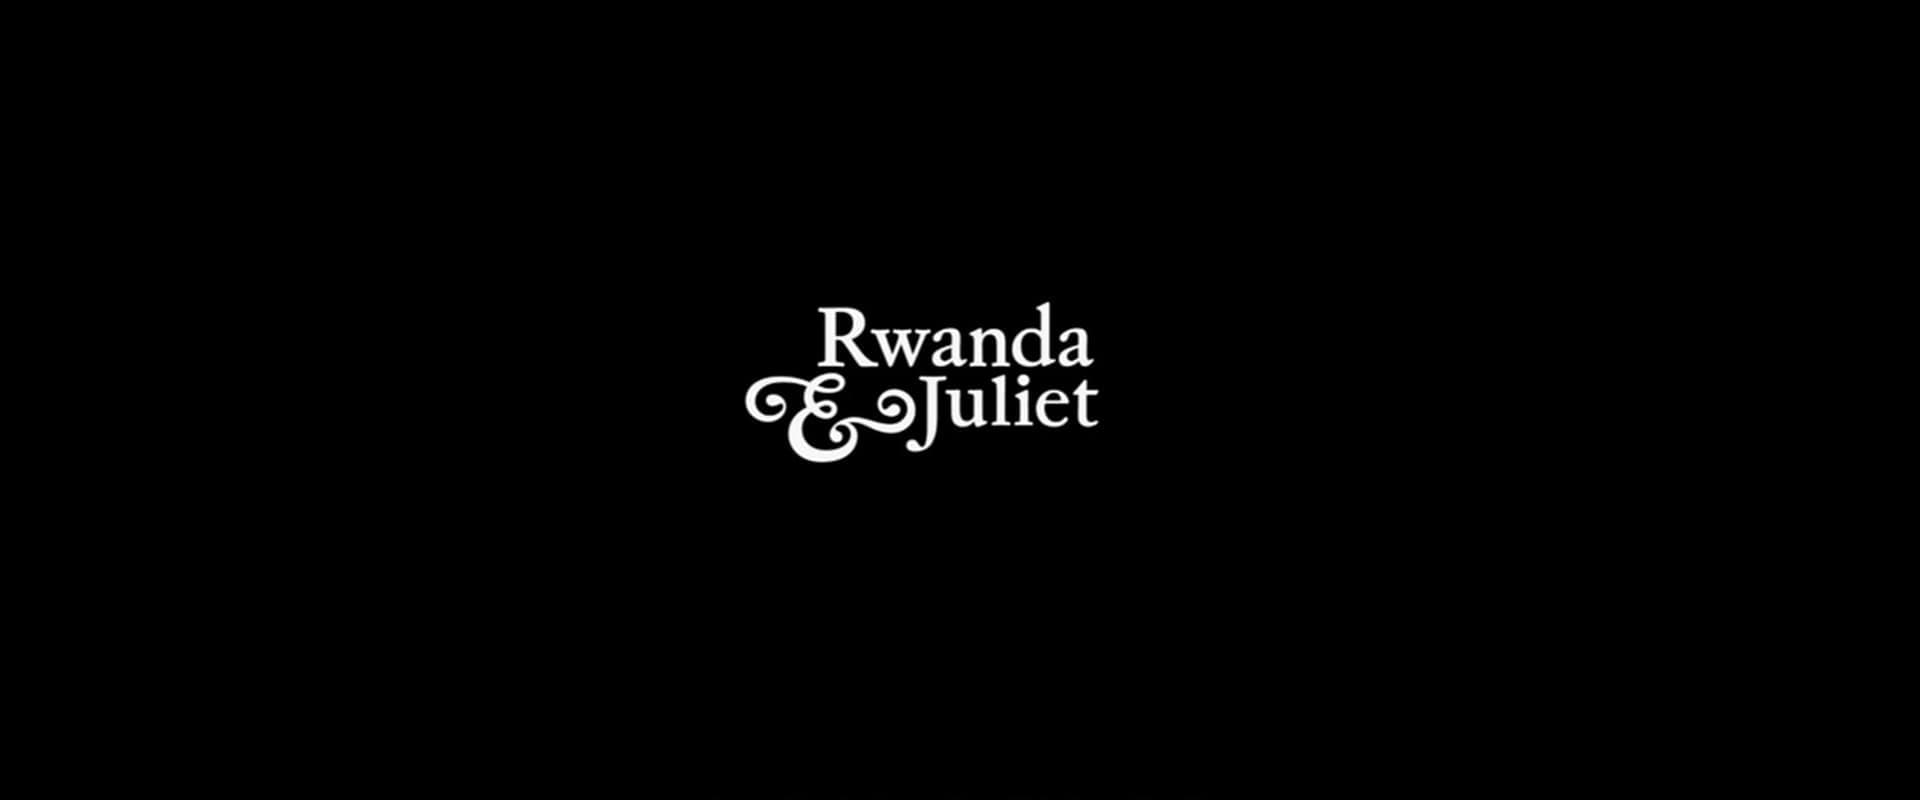 Rwanda & Juliet